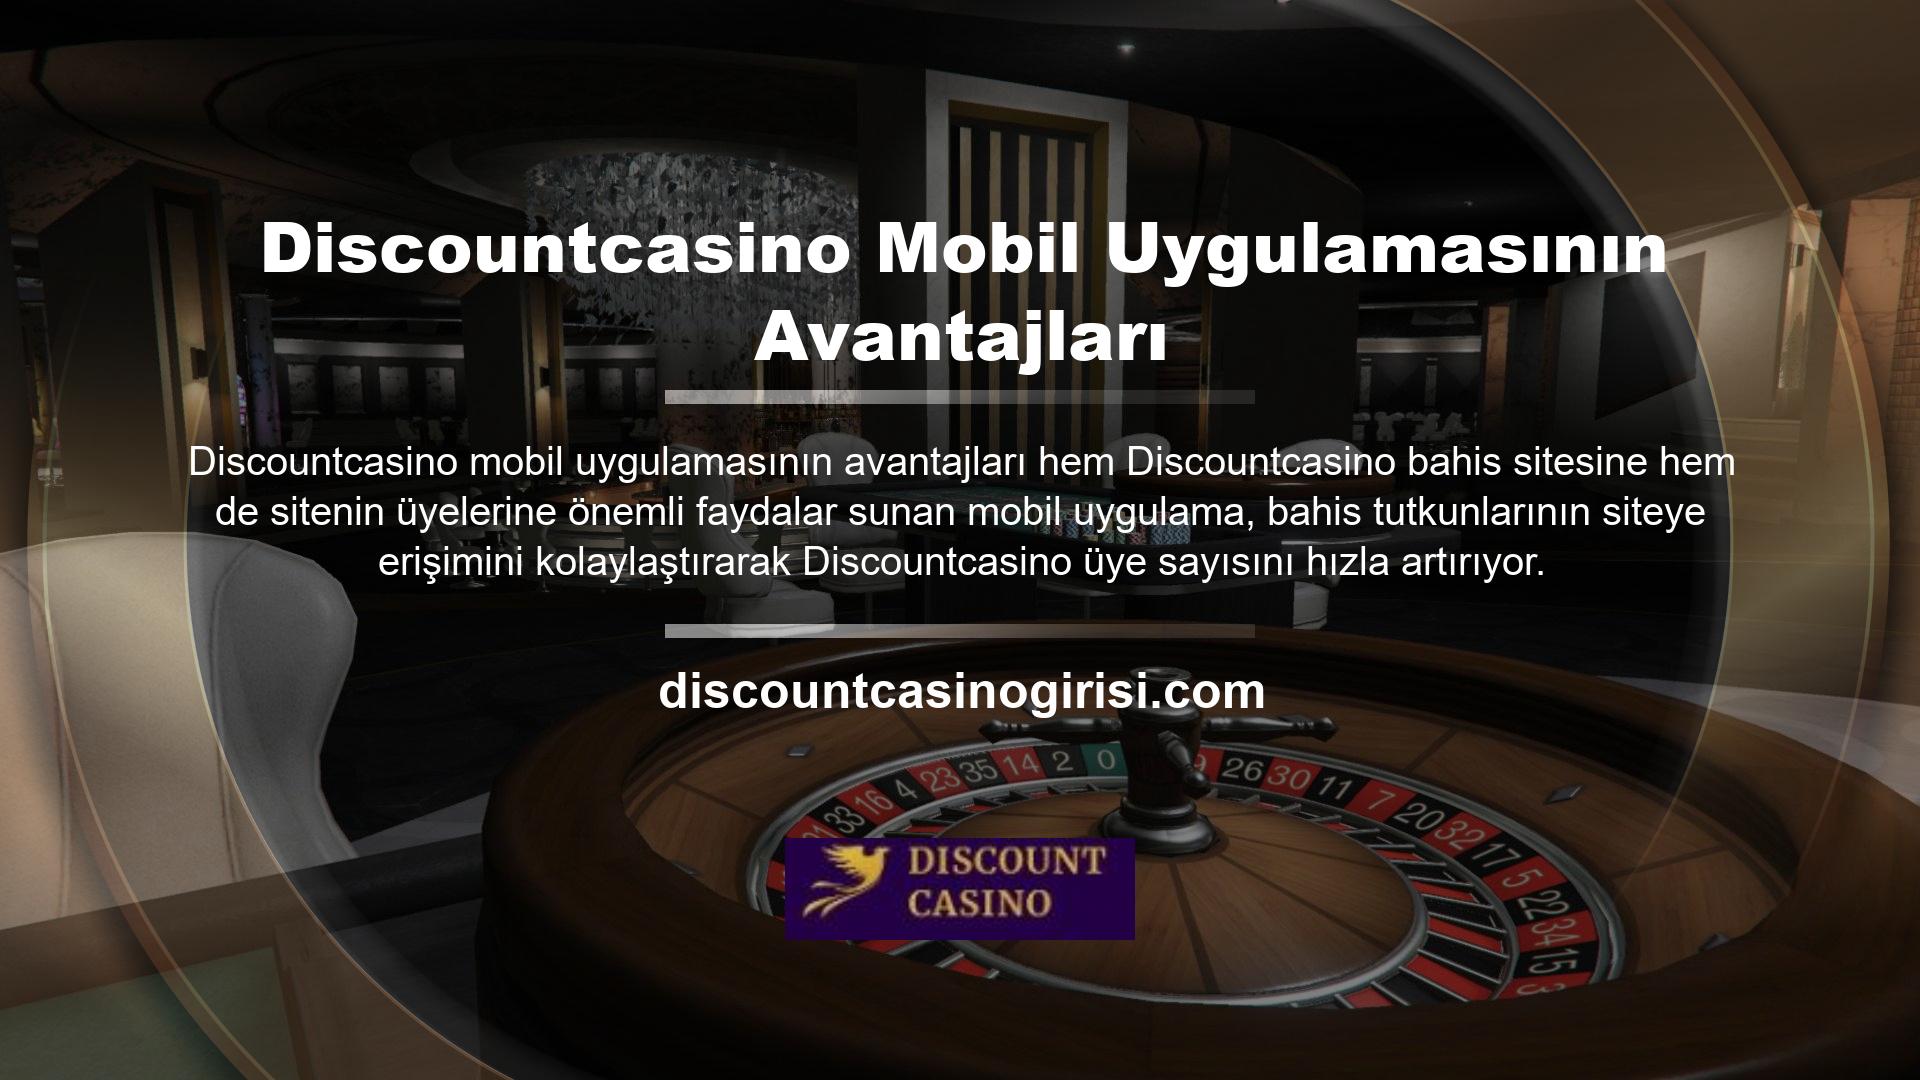 Casino meraklıları Discountcasino bahis sitesini mobil uygulama üzerinden diledikleri zaman yanlarında götürüp diledikleri zaman casino heyecanını yaşayabilmekte, sitenin kullanıcılarıyla olan bağını güçlendirmektedir